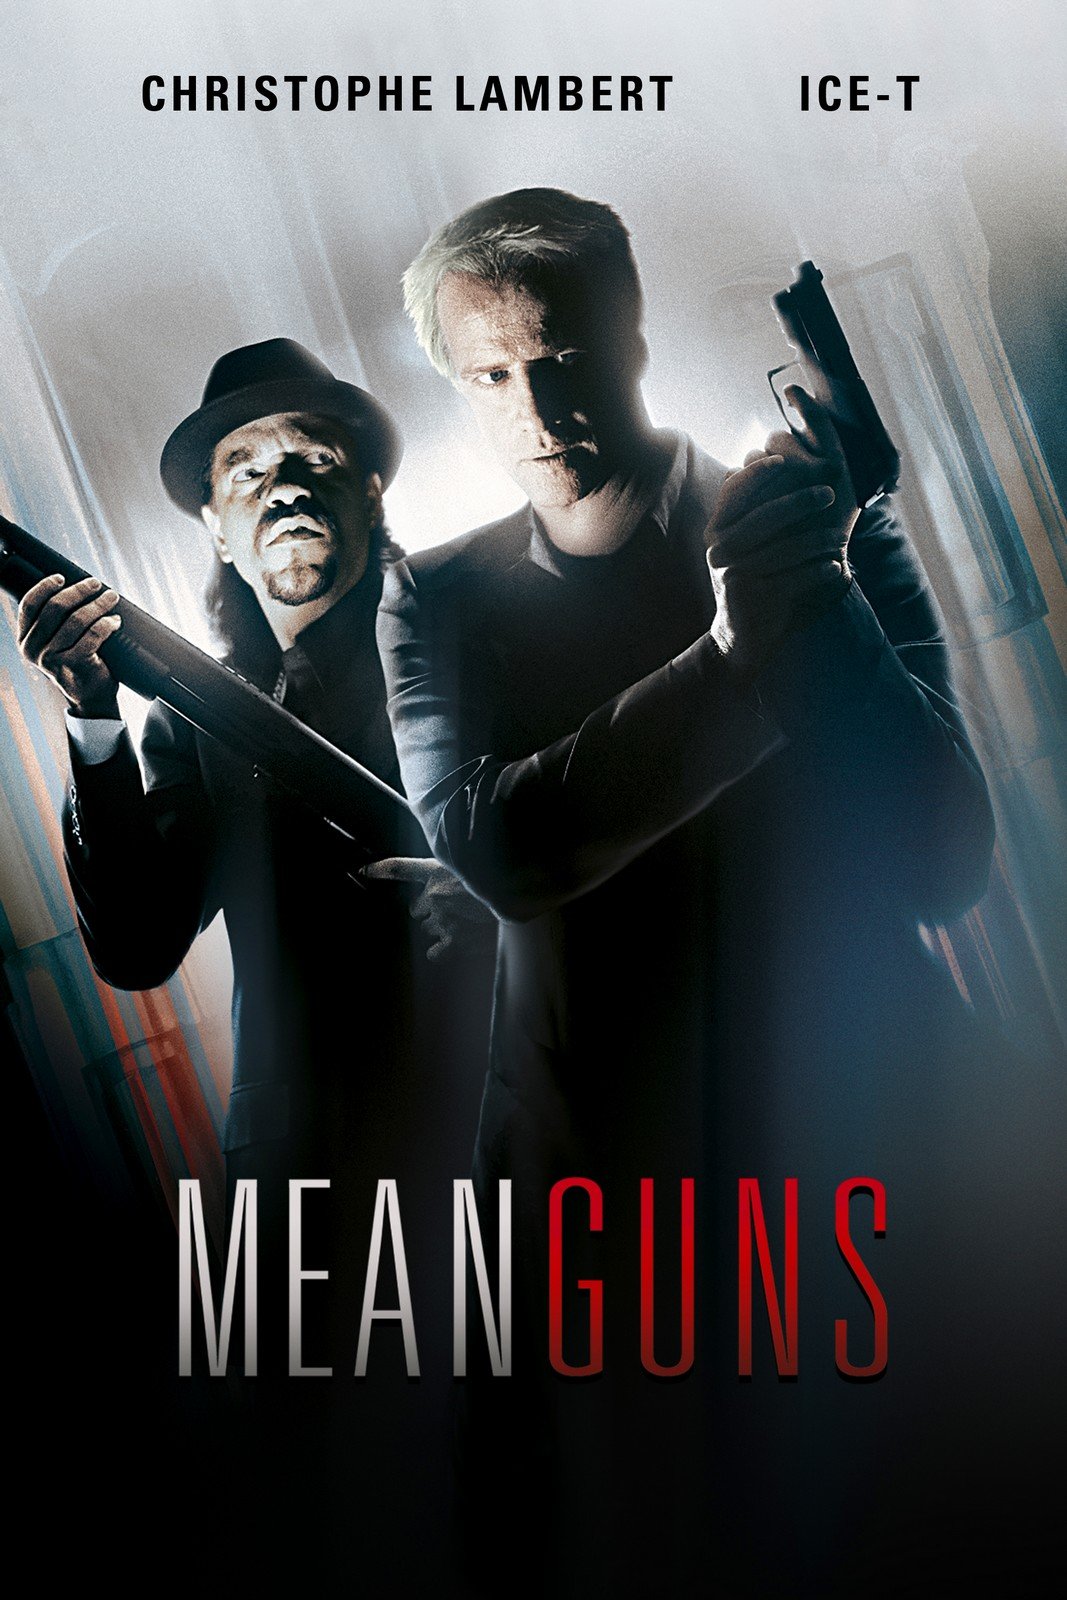 Mean guns : Affiche